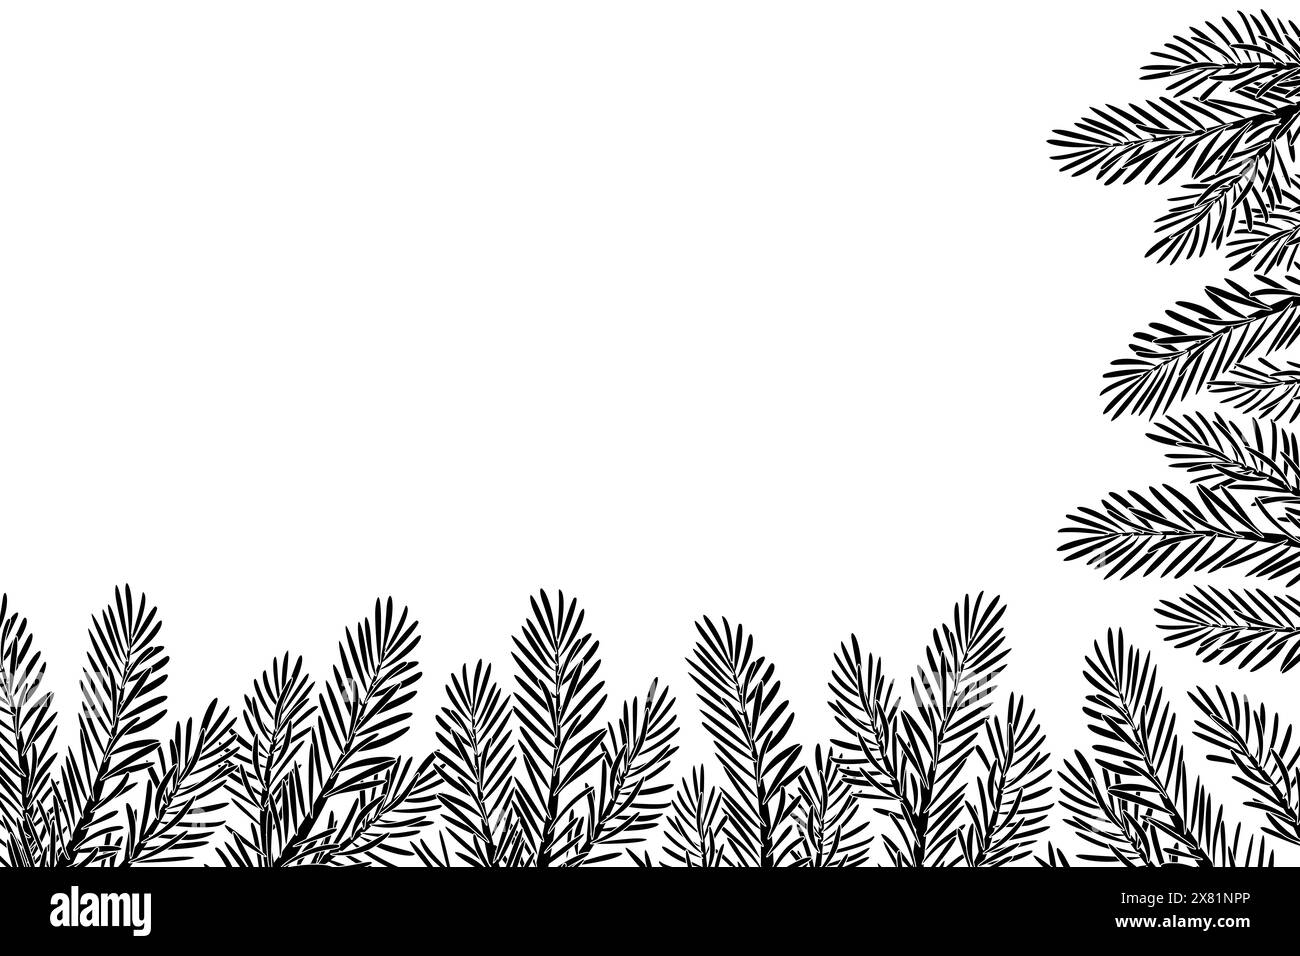 Décoration de cadre d'angle de silhouette d'arbre de Noël. Branches de sapin, pin, branche d'épinette. Illustration vectorielle de style doodle dessinée à la main. Pour le nouvel an, en-têtes de saison d'hiver, cartes, affiches de fête. Illustration de Vecteur